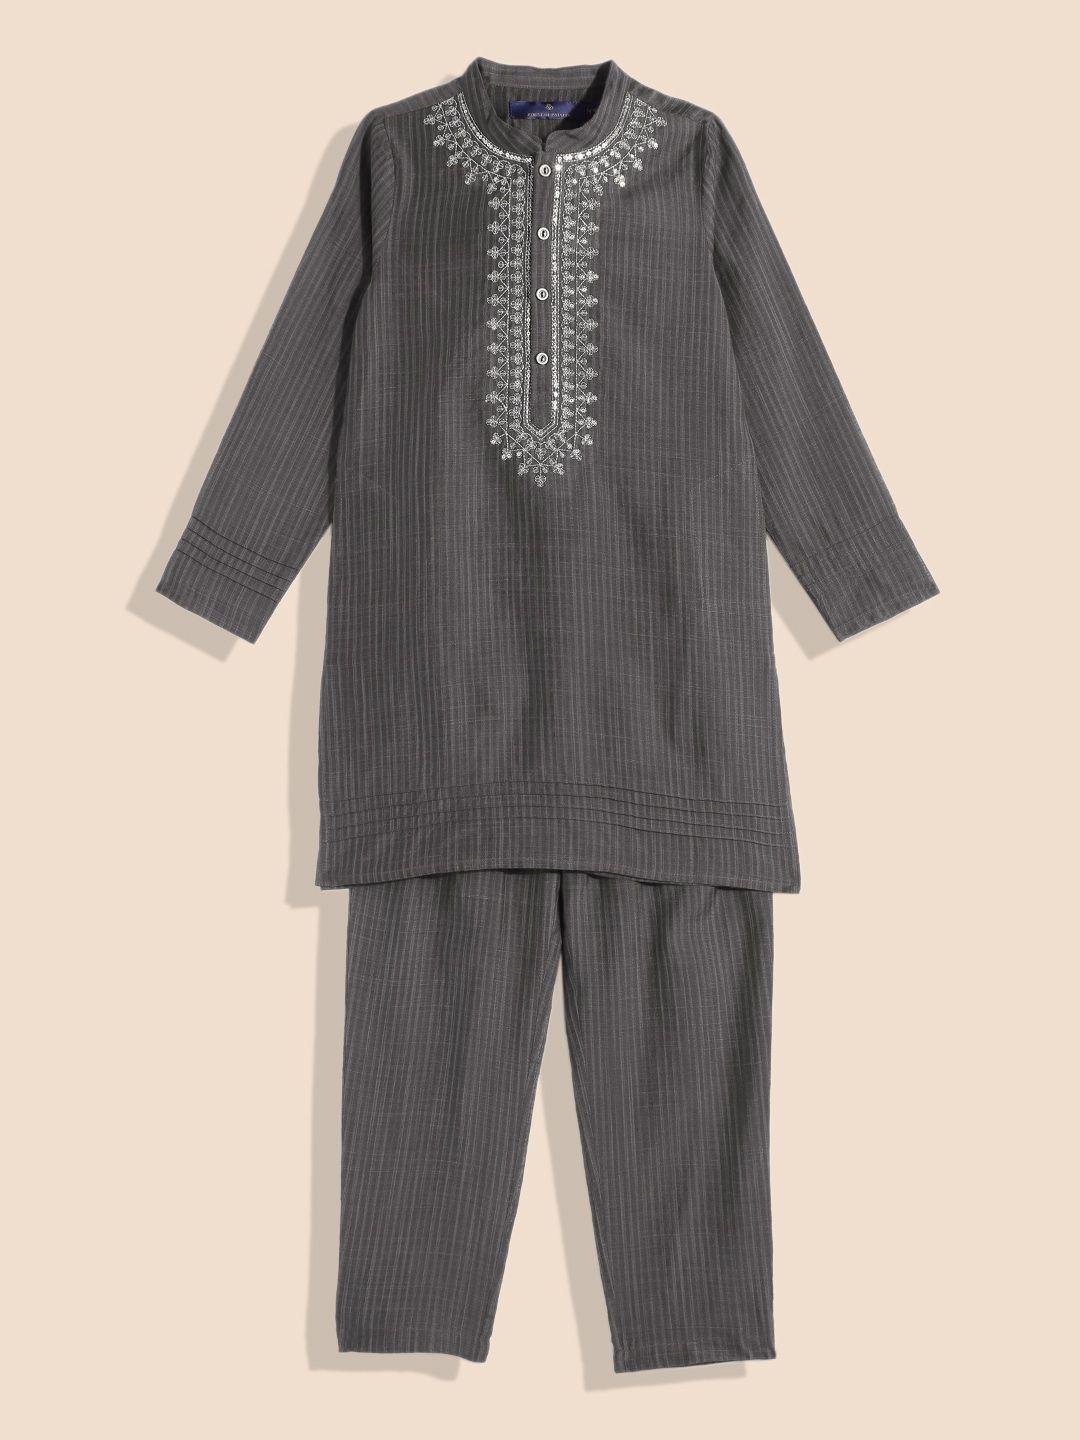 house of pataudi boys grey sequinned kurta with pyjamas